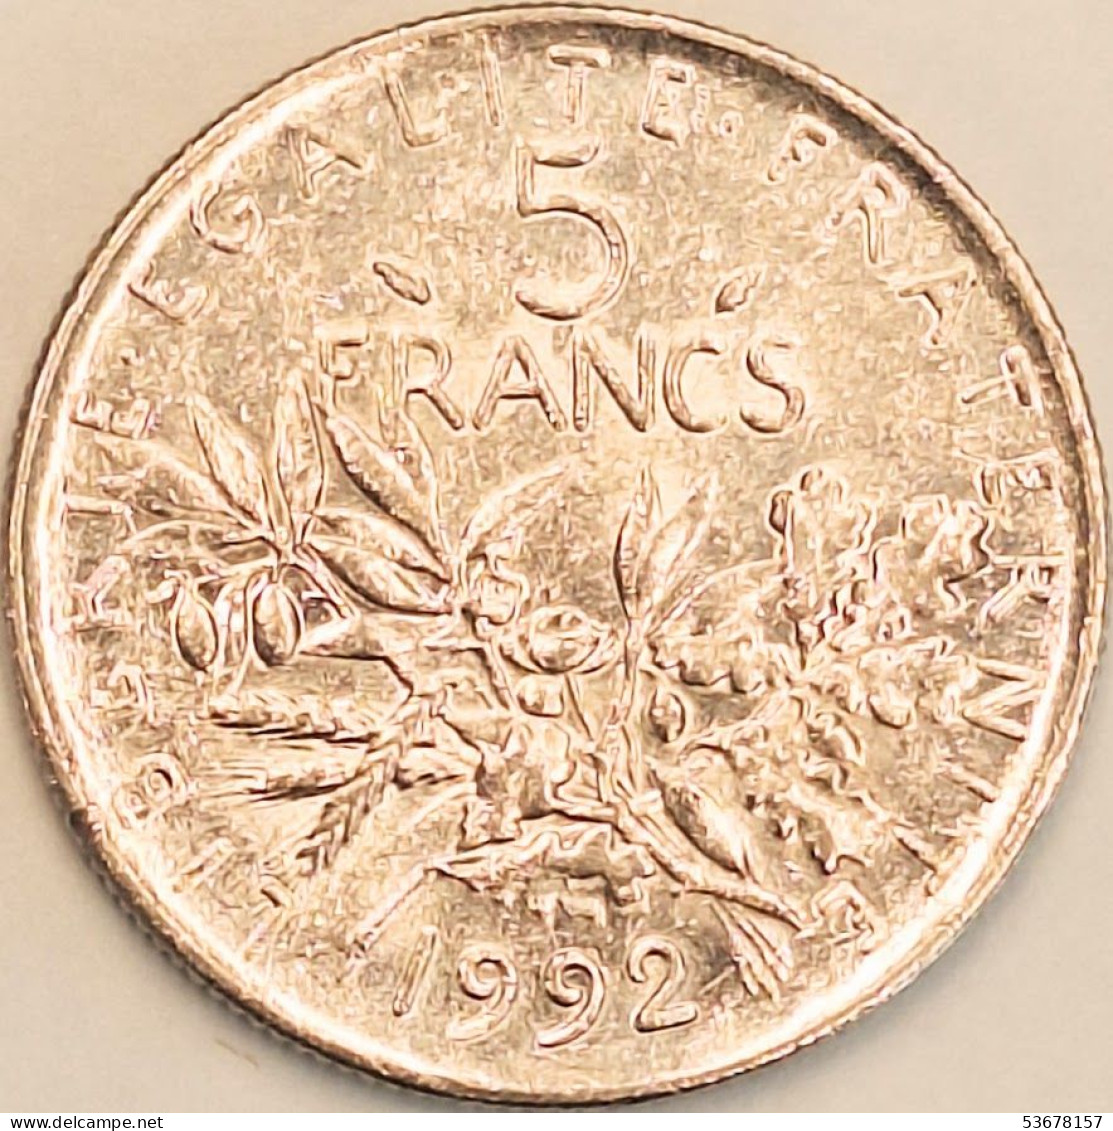 France - 5 Francs 1992, KM# 926a.1 (#4344) - 5 Francs